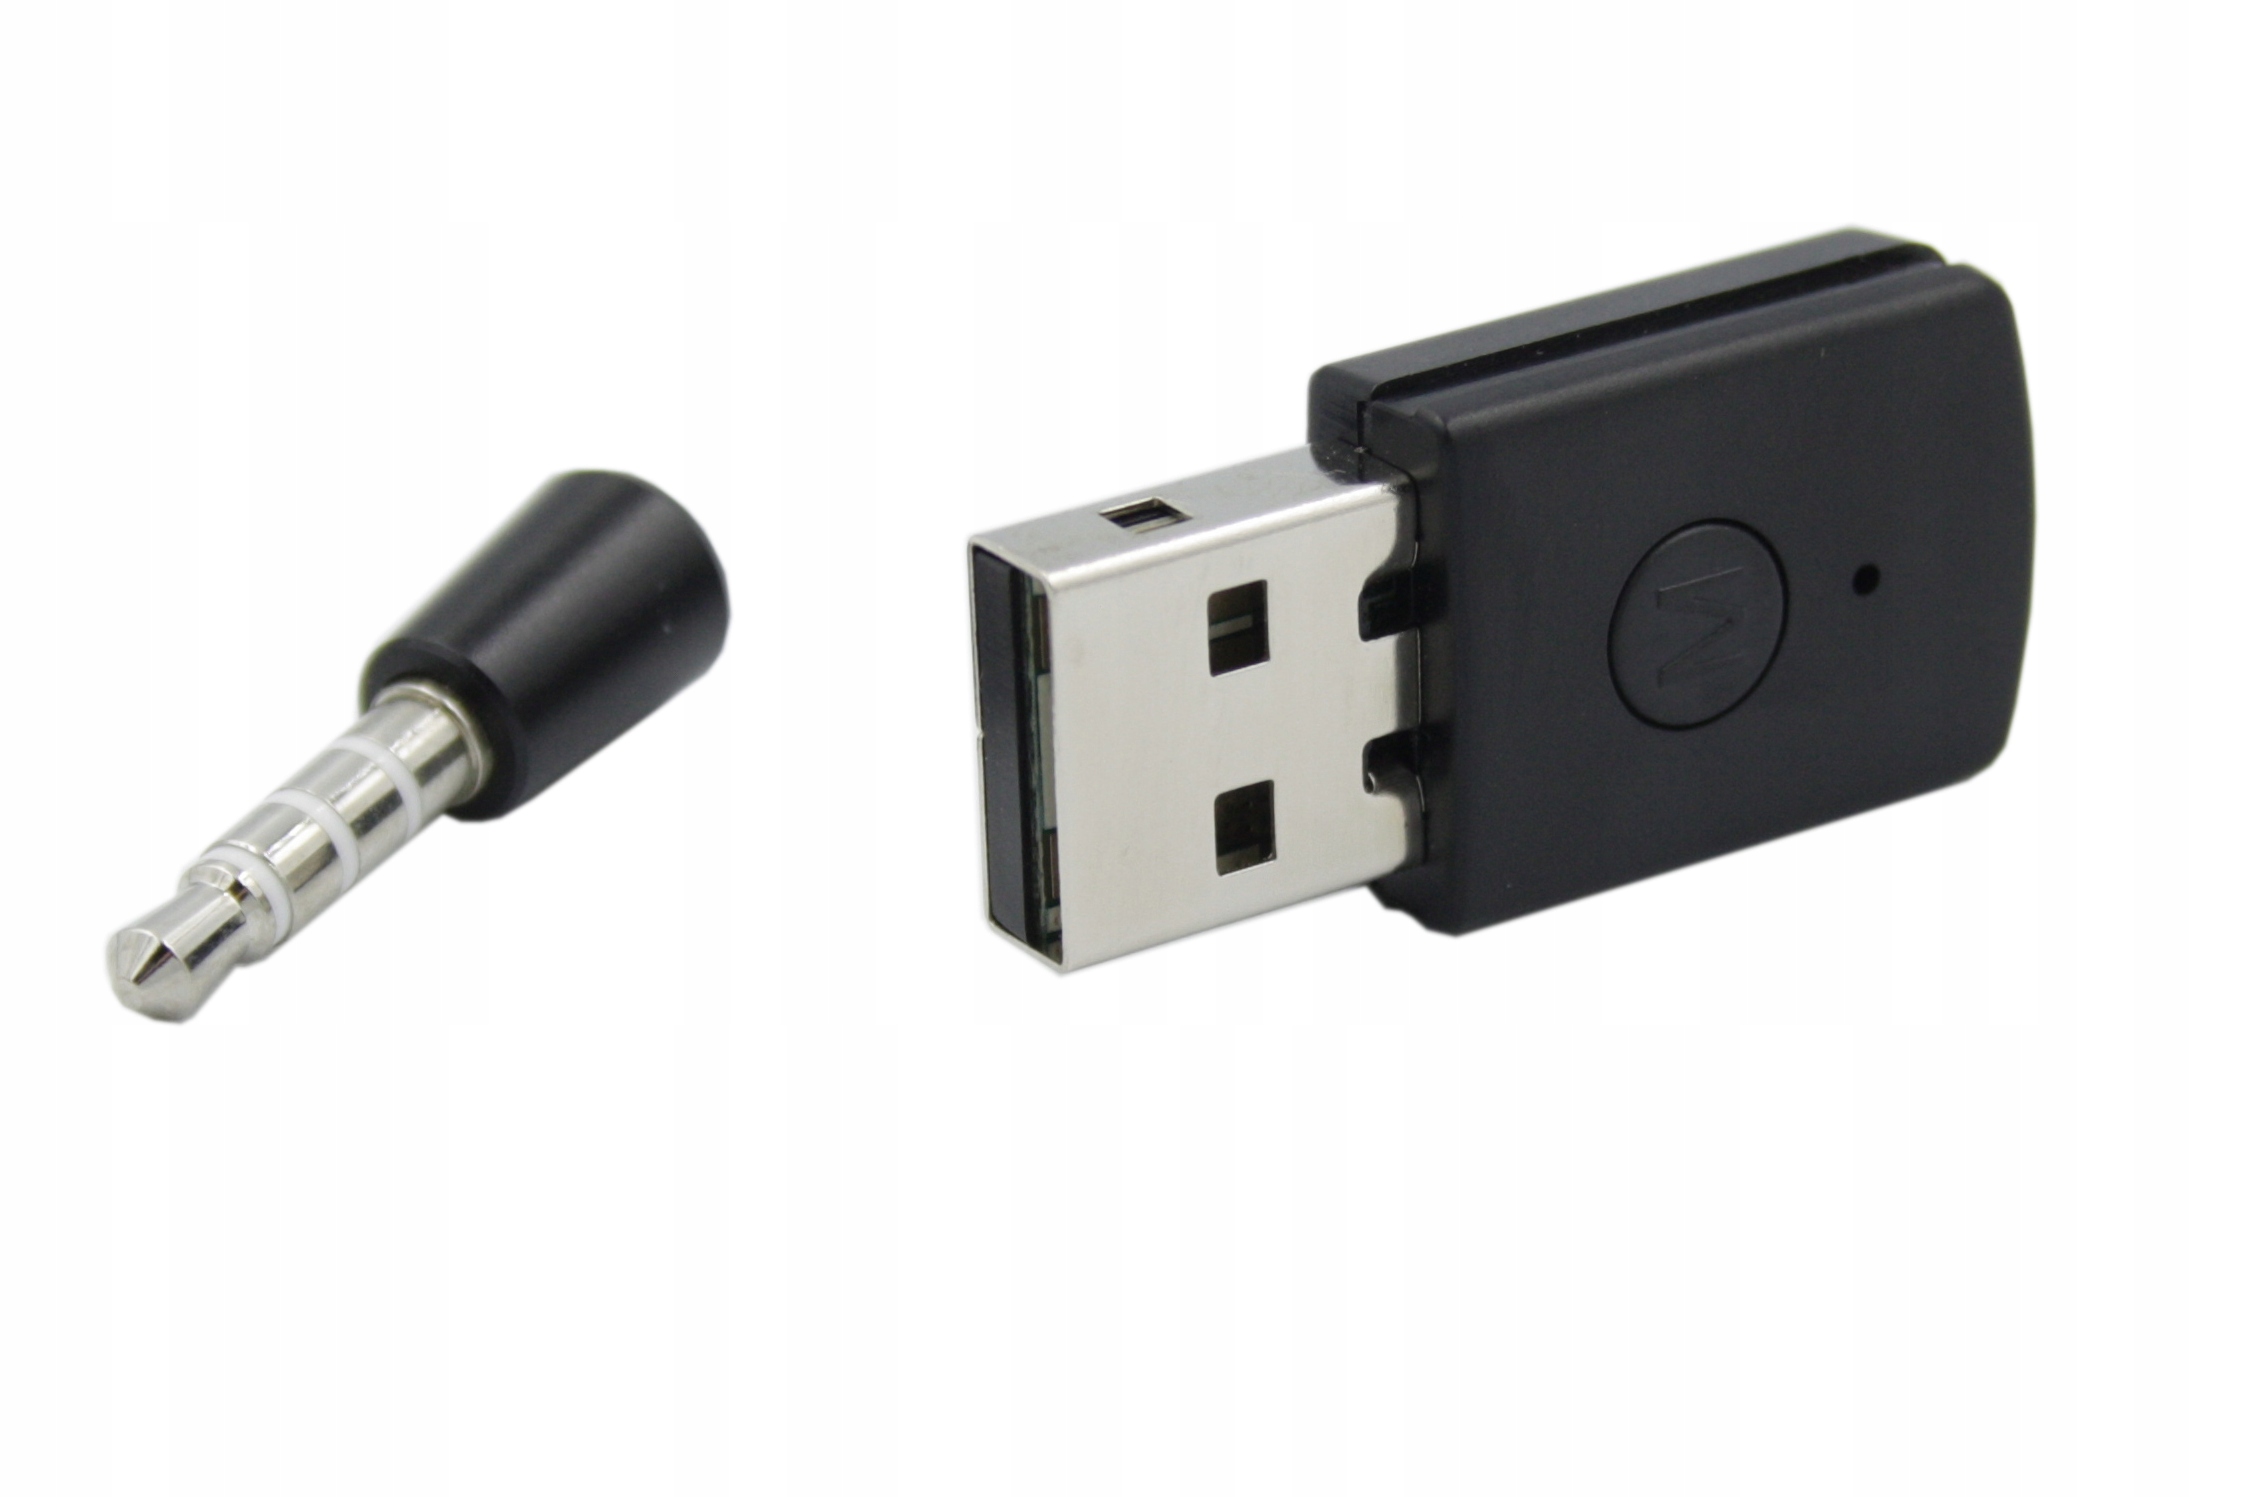 ADAPTER BLUETOOTH USB DO PS4 Z MIKROFONEM MINI JACK 3,5 MM TRANSMITER AUDIO - Akcesoria elektroniczne